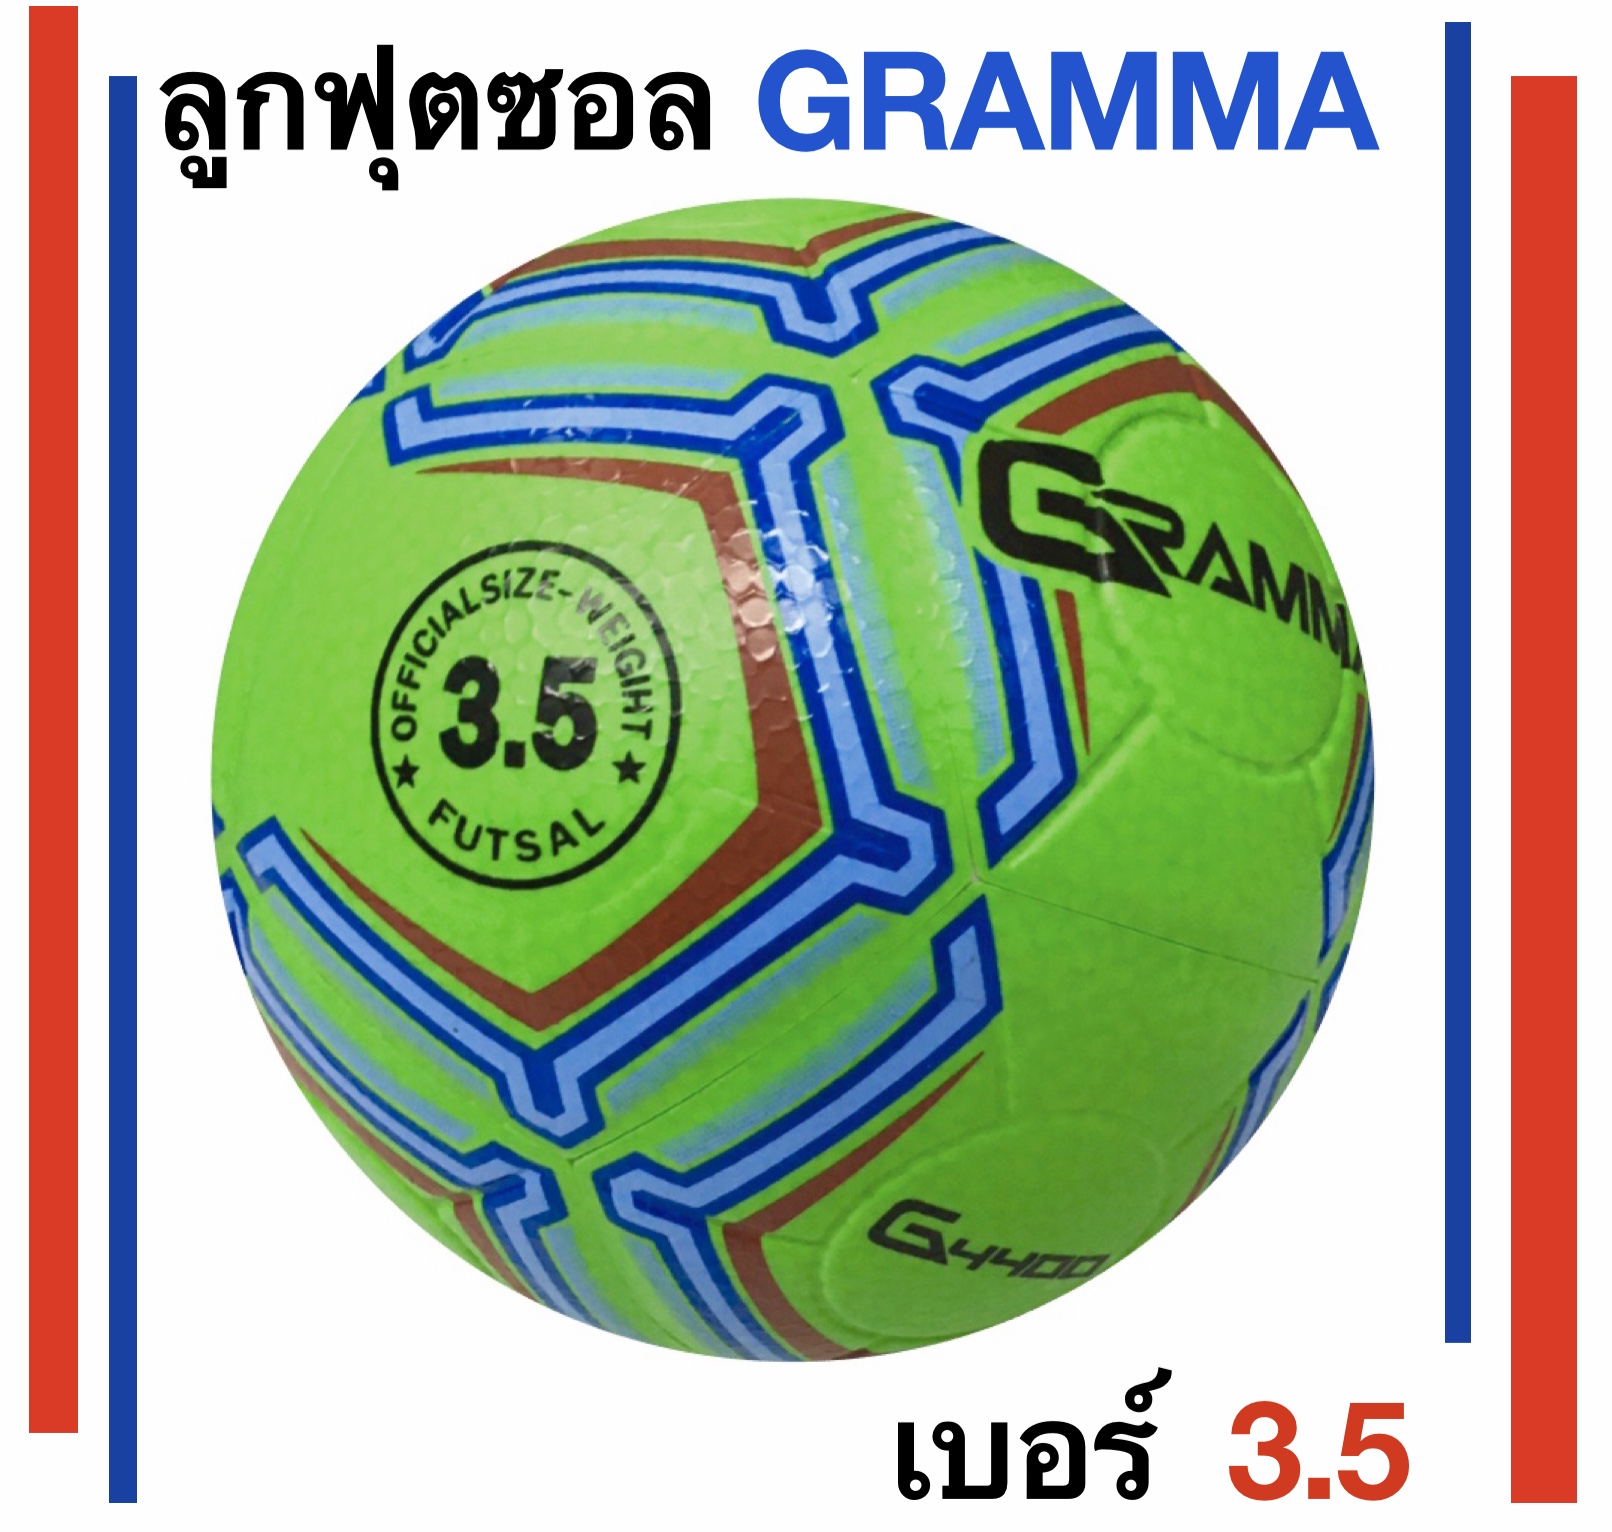 GRAMMA ลูกฟุตซอล แกรมม่า รุ่น G4400 แถมฟรีตาข่ายใส่ลูกบอลและเข็มสูบลม